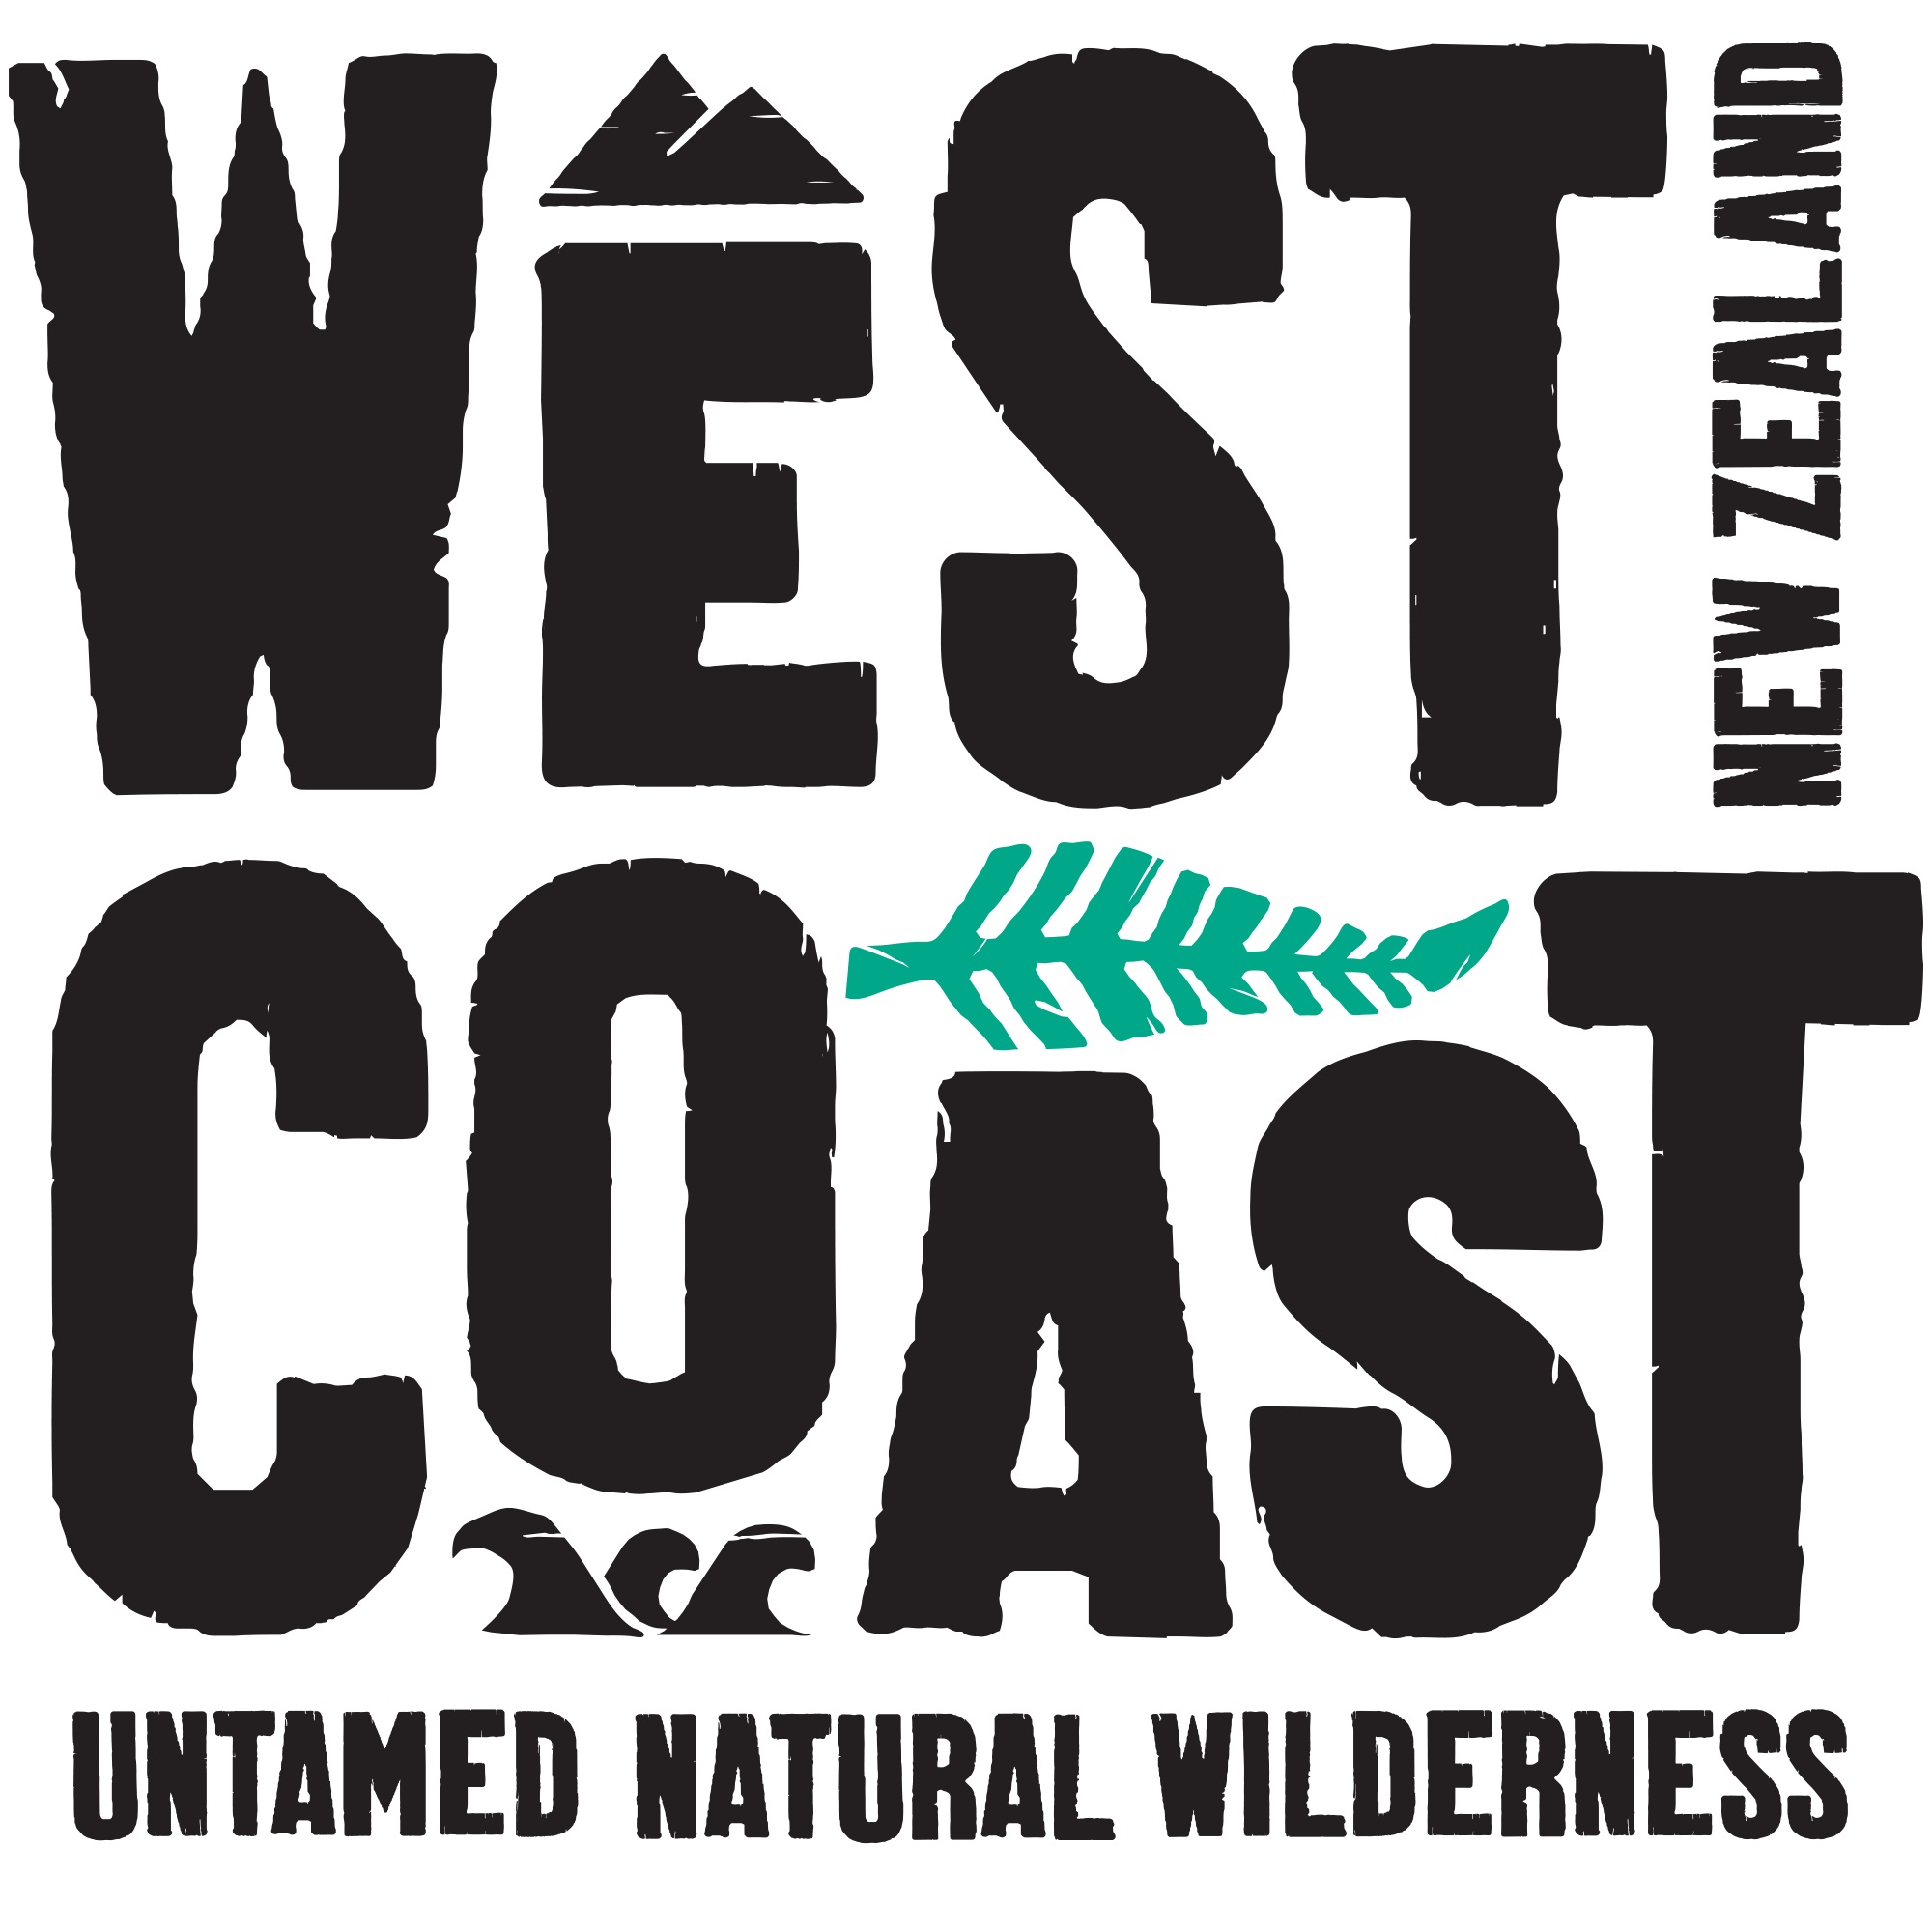 
West Coast Conferences & Events